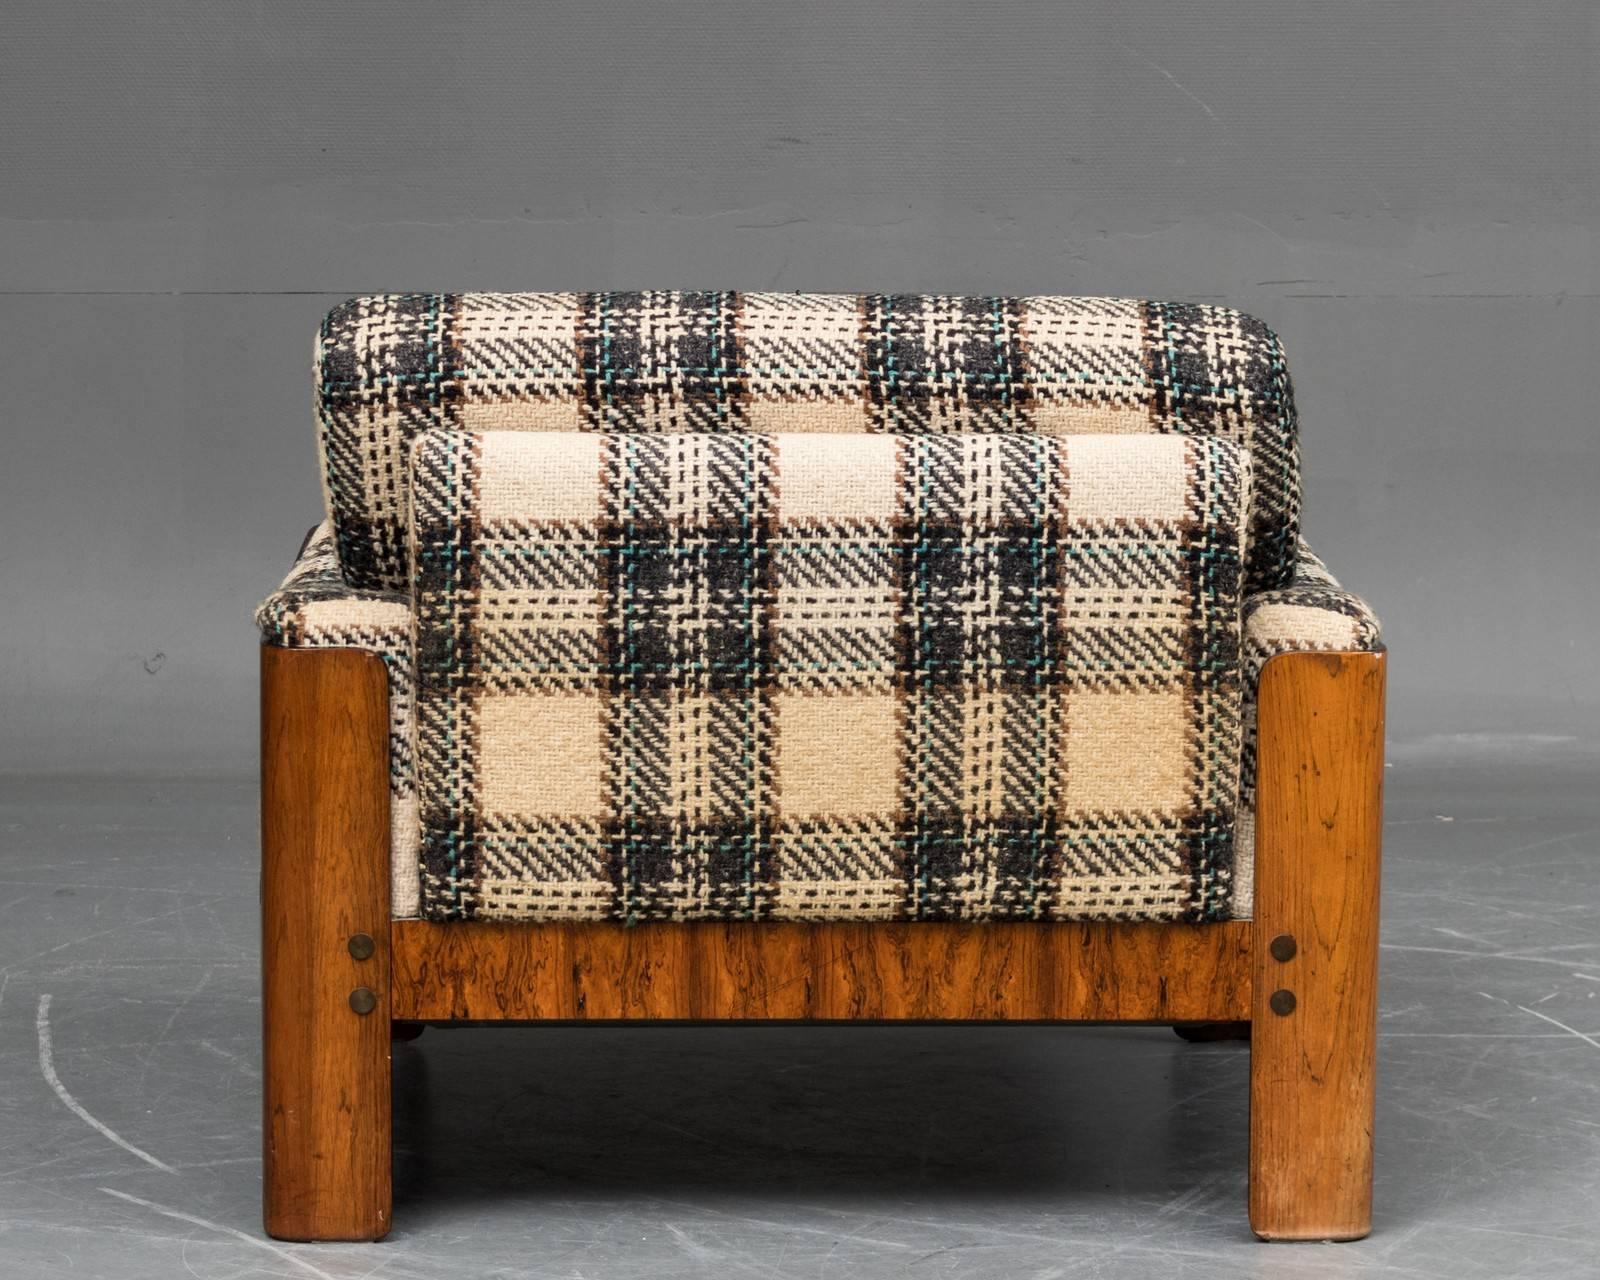 Danish Midcentury Cubistic Easy Chair in Rosewood Veneer by Komfort Mobler 1